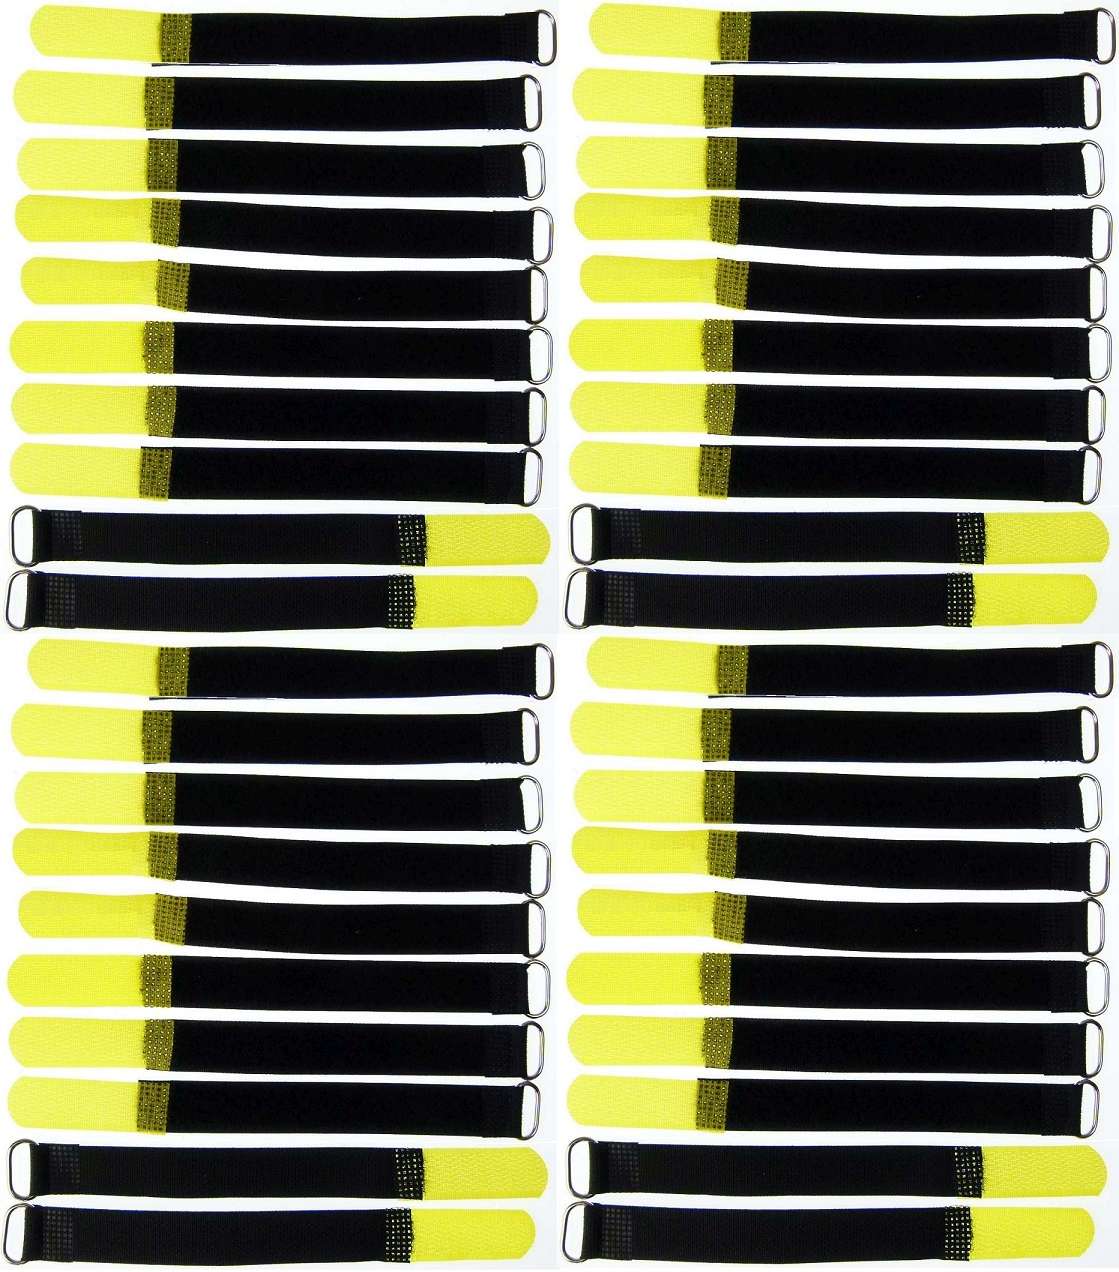 20x Kabelklettband 16 cm x 16 mm neon gelb Klettband Klett Kabel Binder Band Öse 